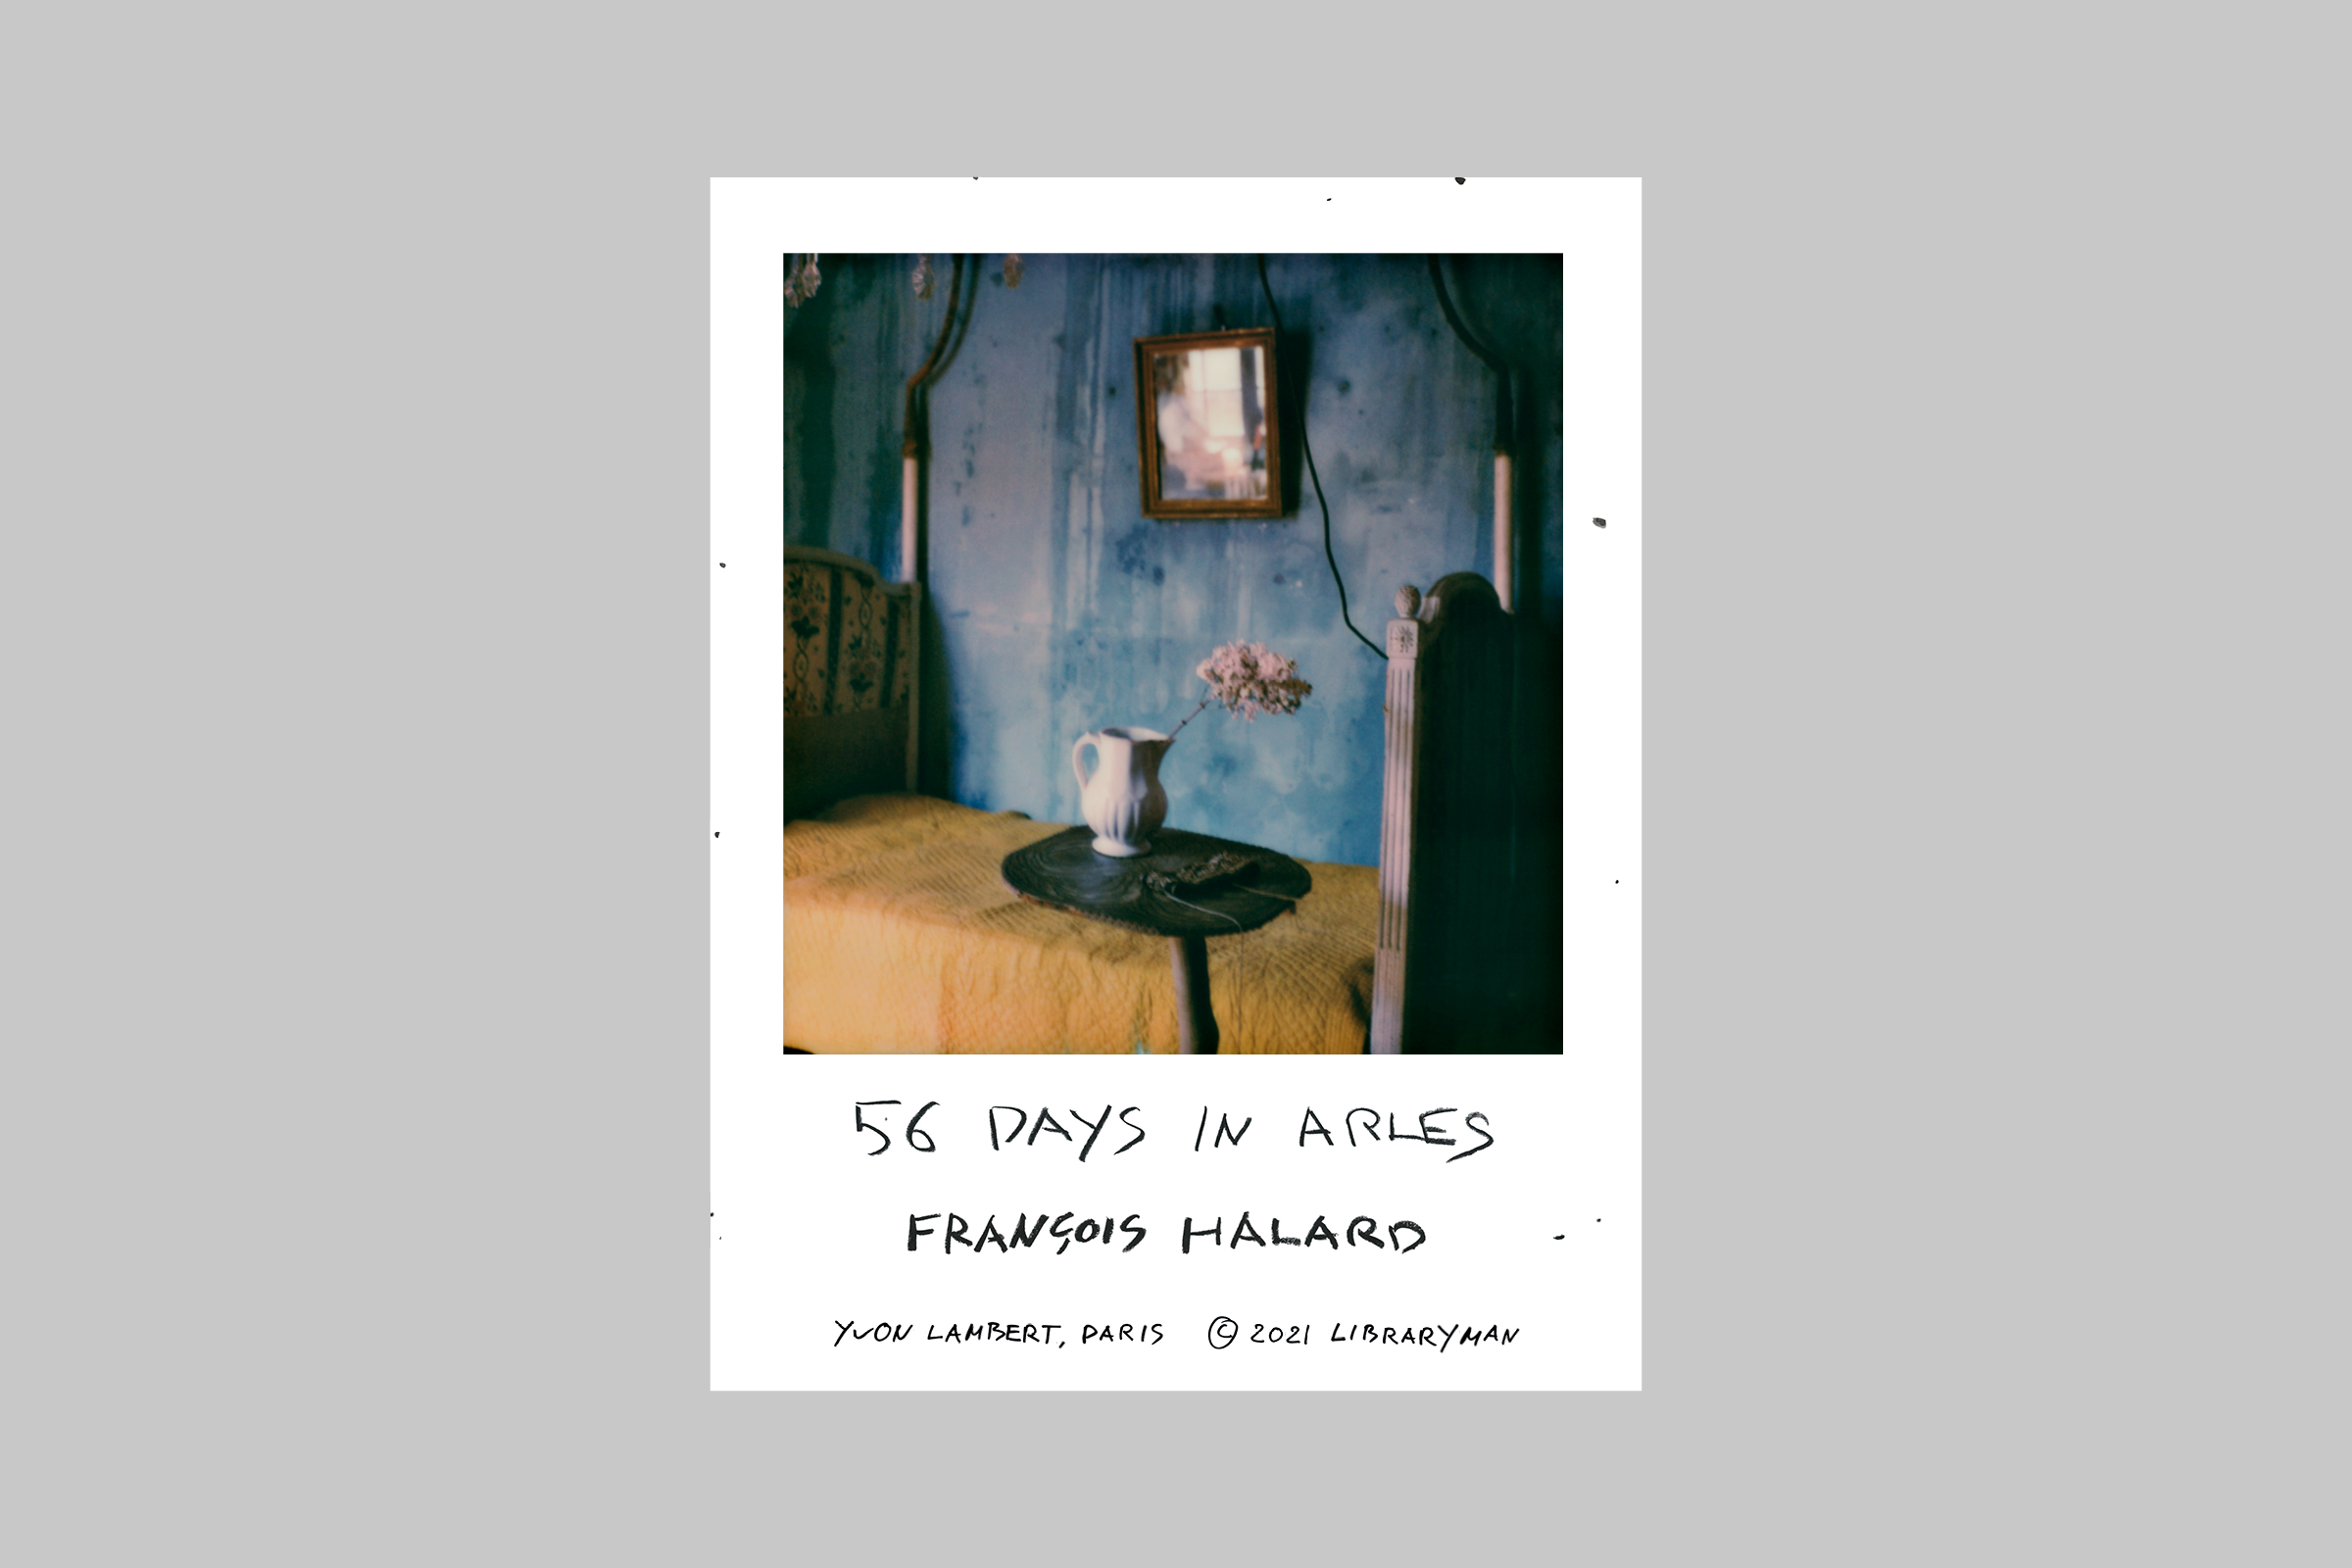 François Halard — 56 Days in Arles — Posters